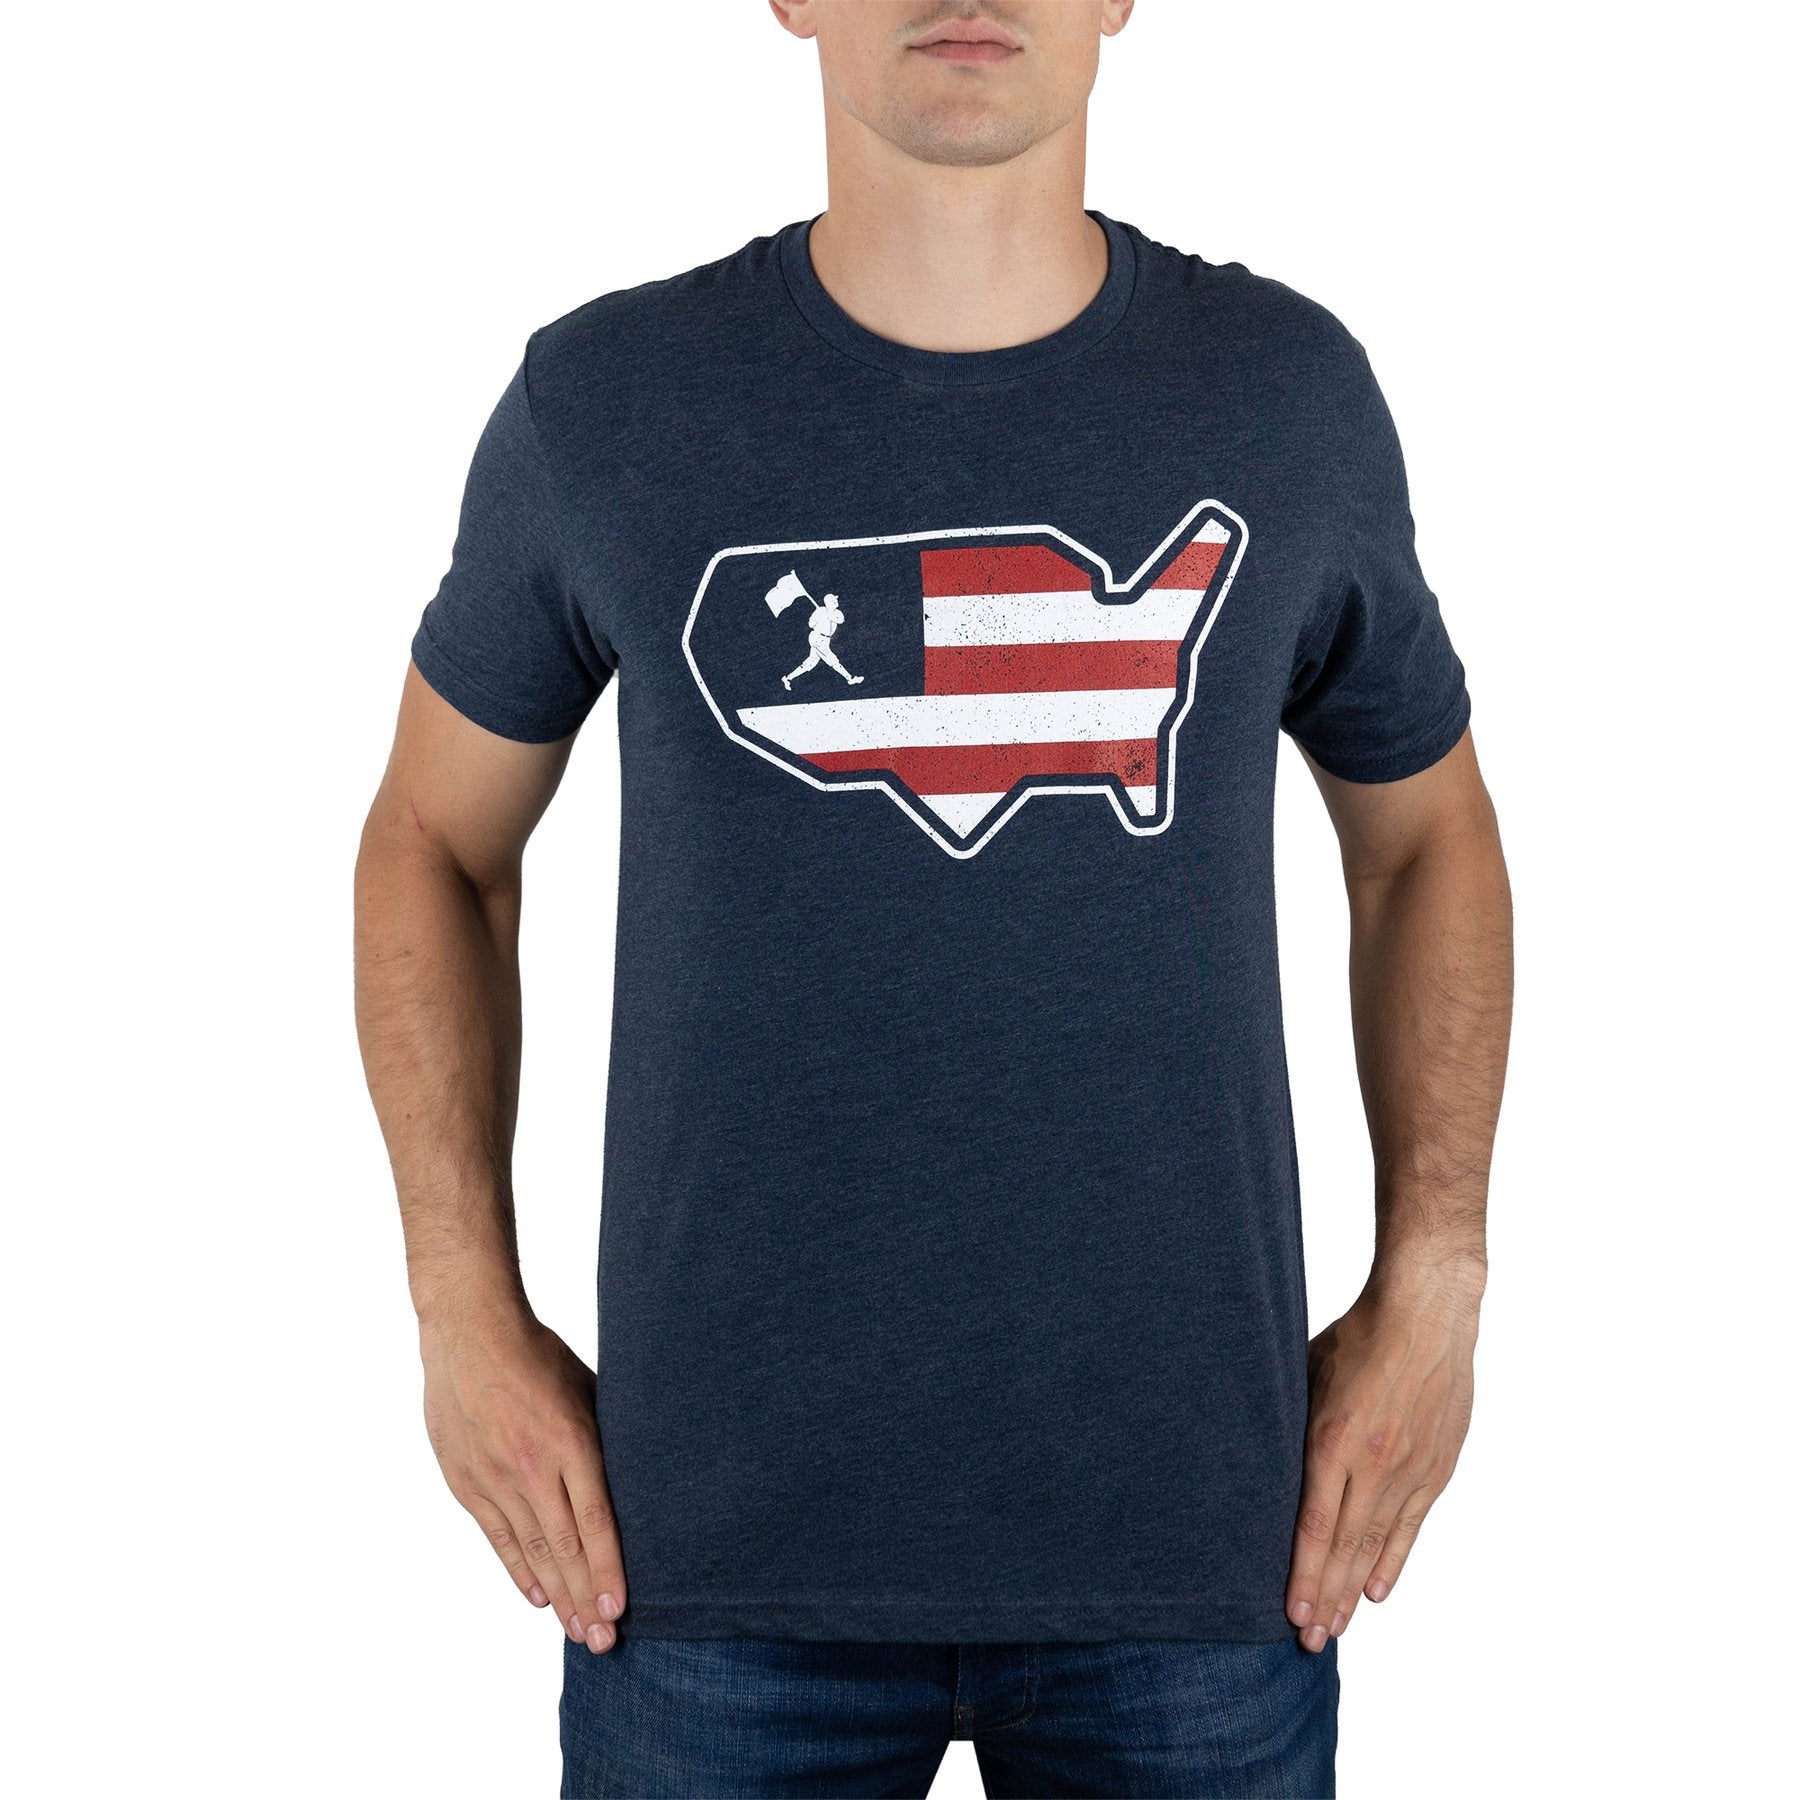 Baseballism Heartbeat Men's T-Shirt